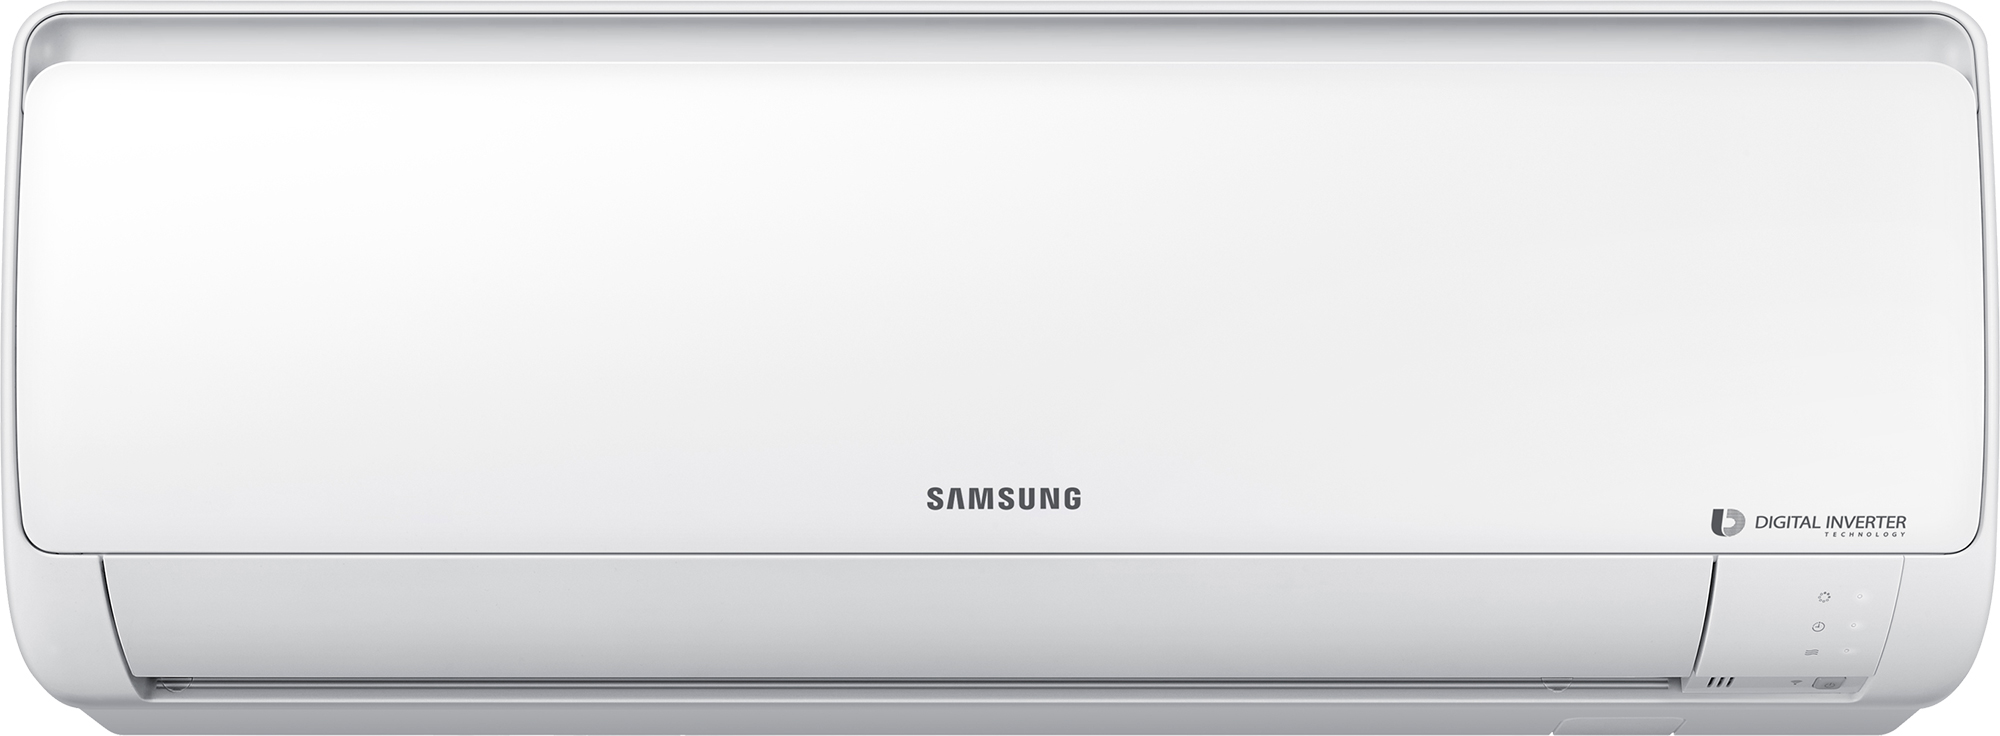 Кондиционер Samsung 24 тыс. BTU Samsung AR24RSFPAWQNER / AR24RSFPAWQXER